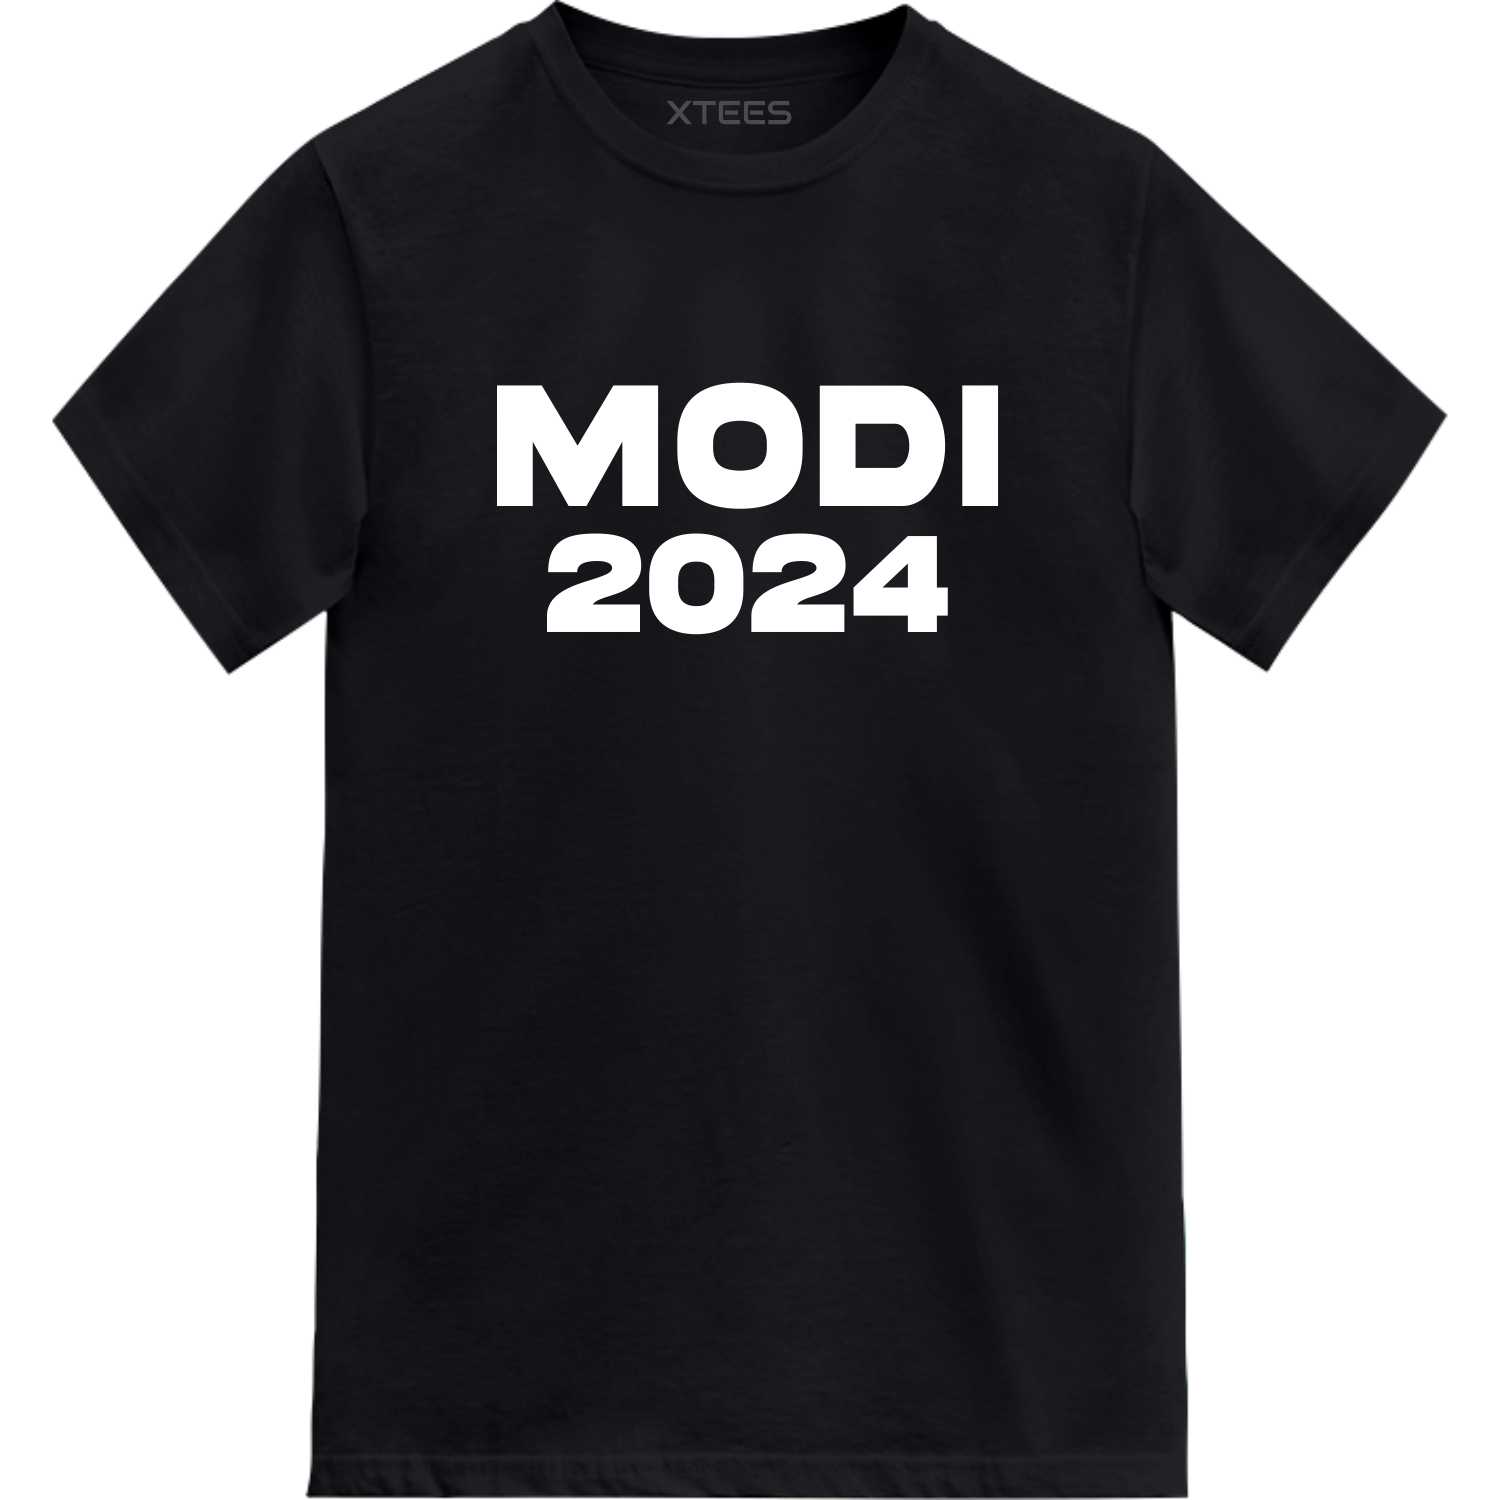 Modi 2024 T-shirt image